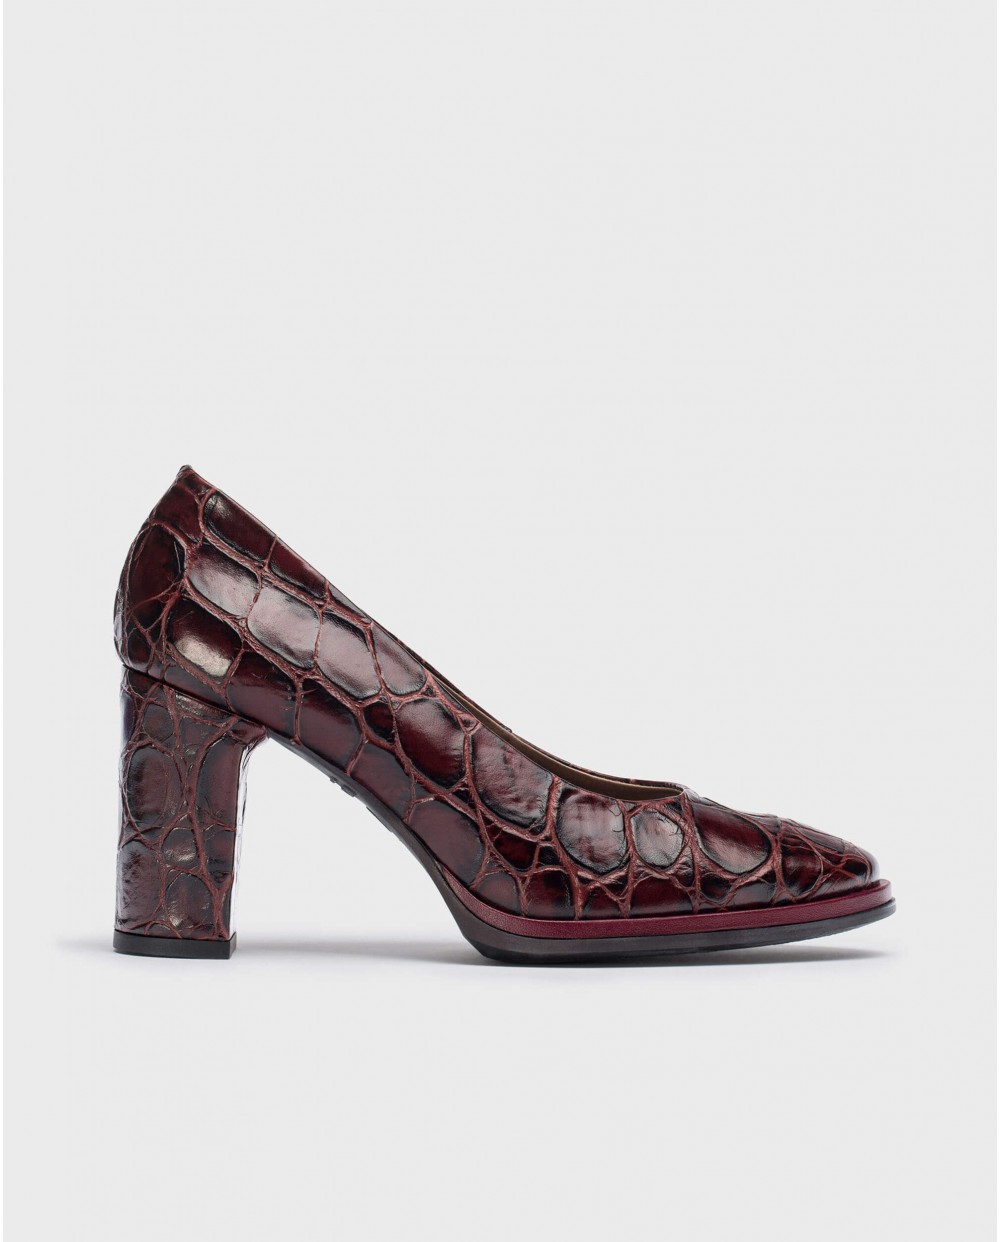 Wonders-Heels-Burgundy DENIS high-heeled shoe